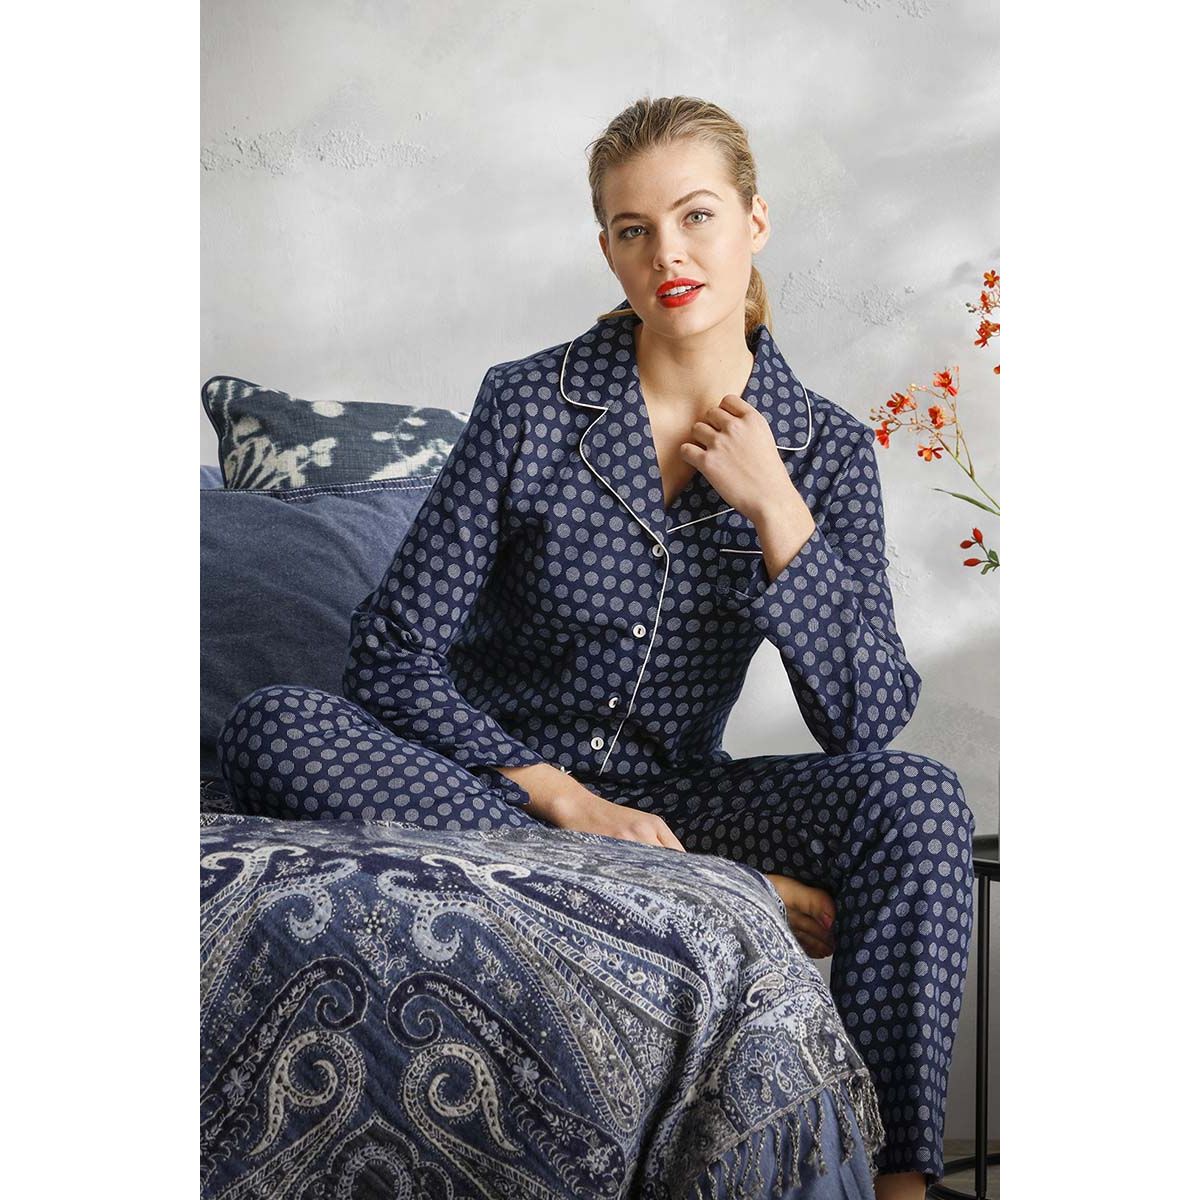 Pastunette pyjama doorknoop flannel - 20212-152-6 - donker blauw